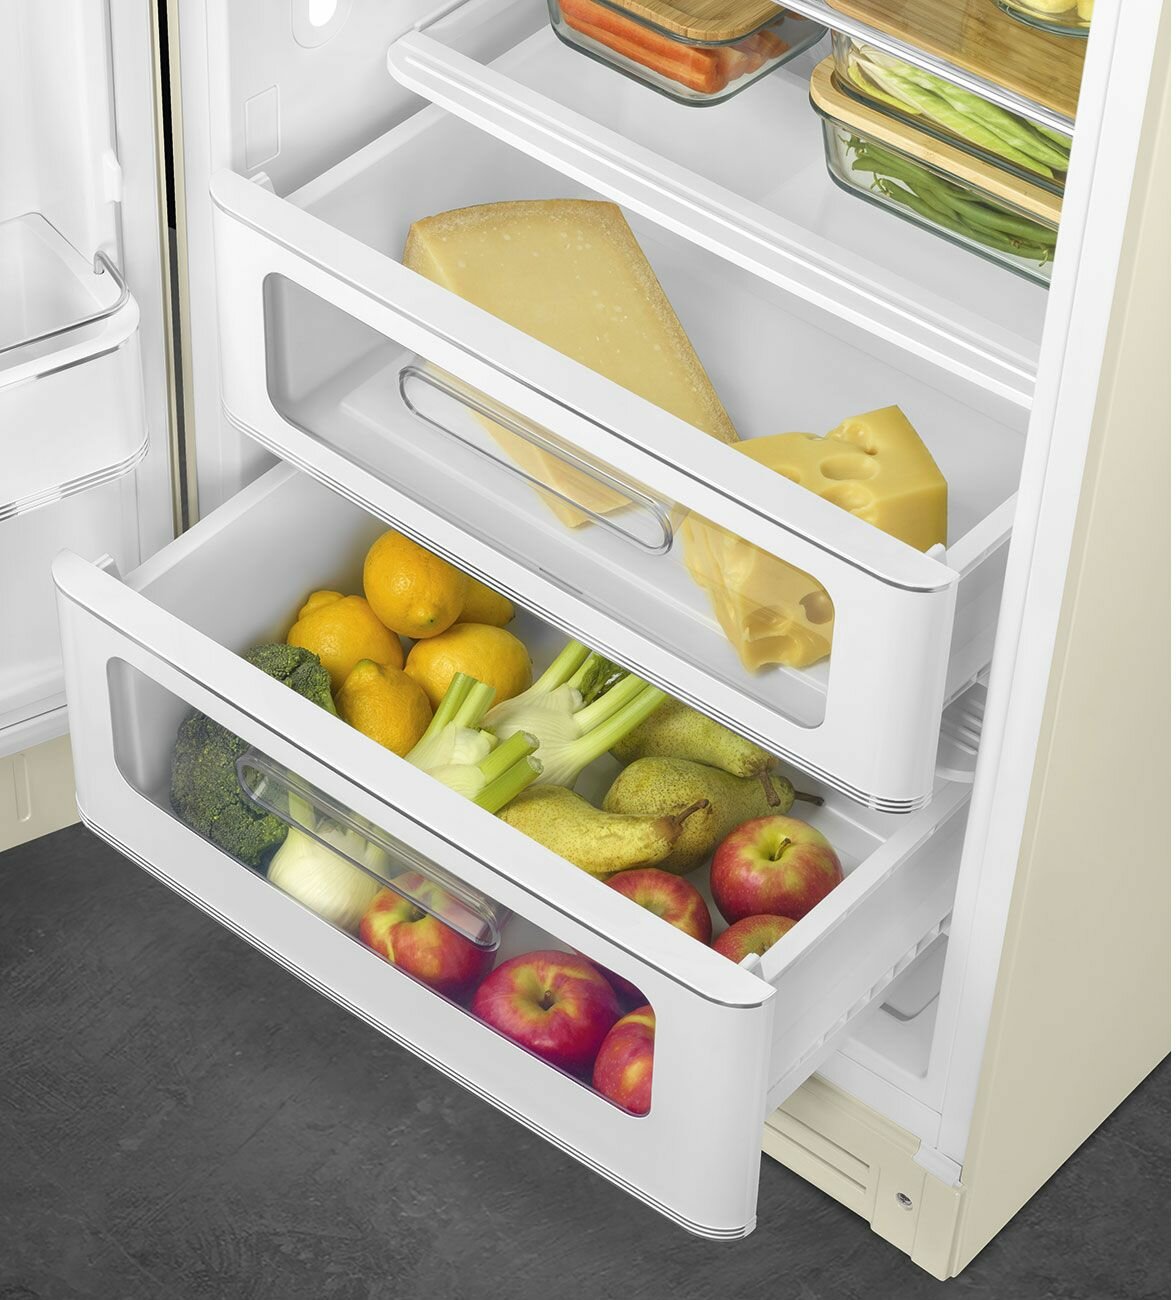 Холодильник SMEG FAB28RCR5 кремовый